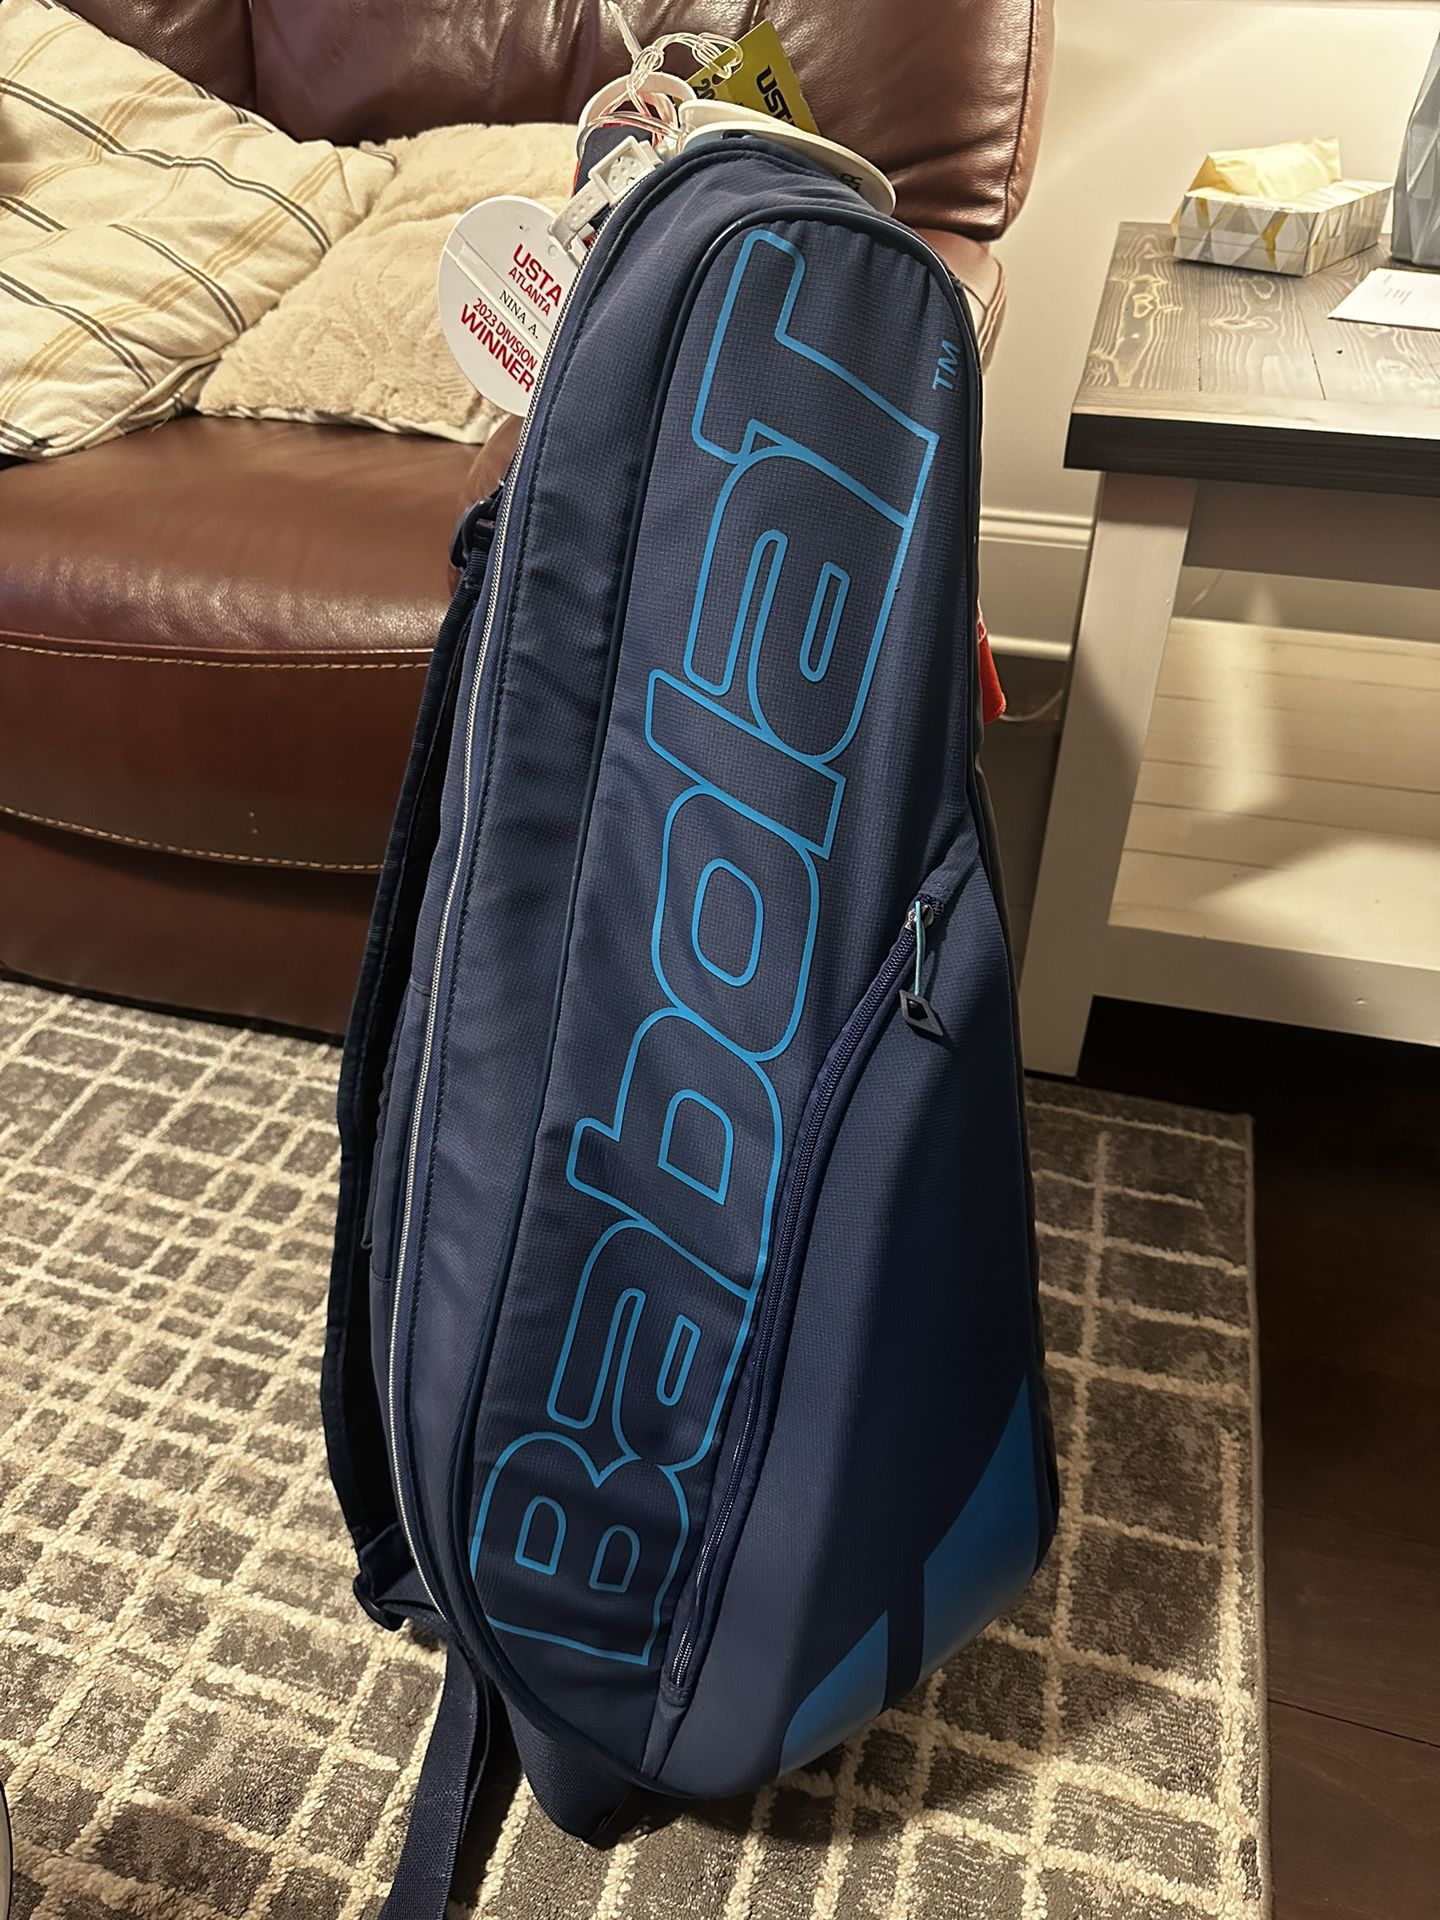  Tennis Bag